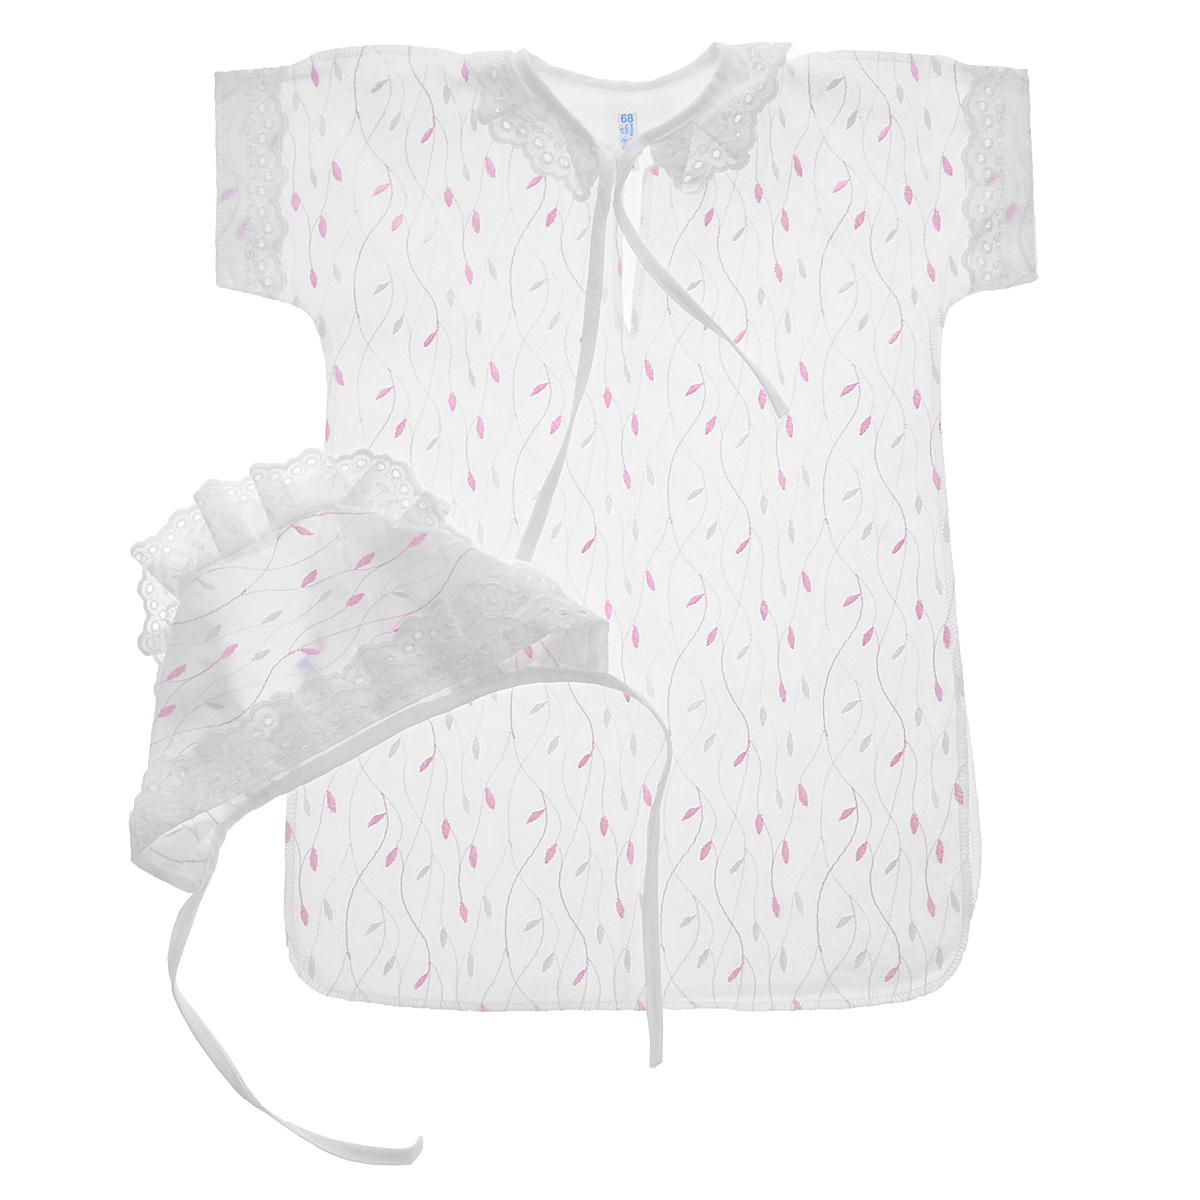 Комплект для крещения детский Трон-плюс: рубашка, чепчик, цвет: белый, розовый. 1403. Размер 68, 6 месяцев